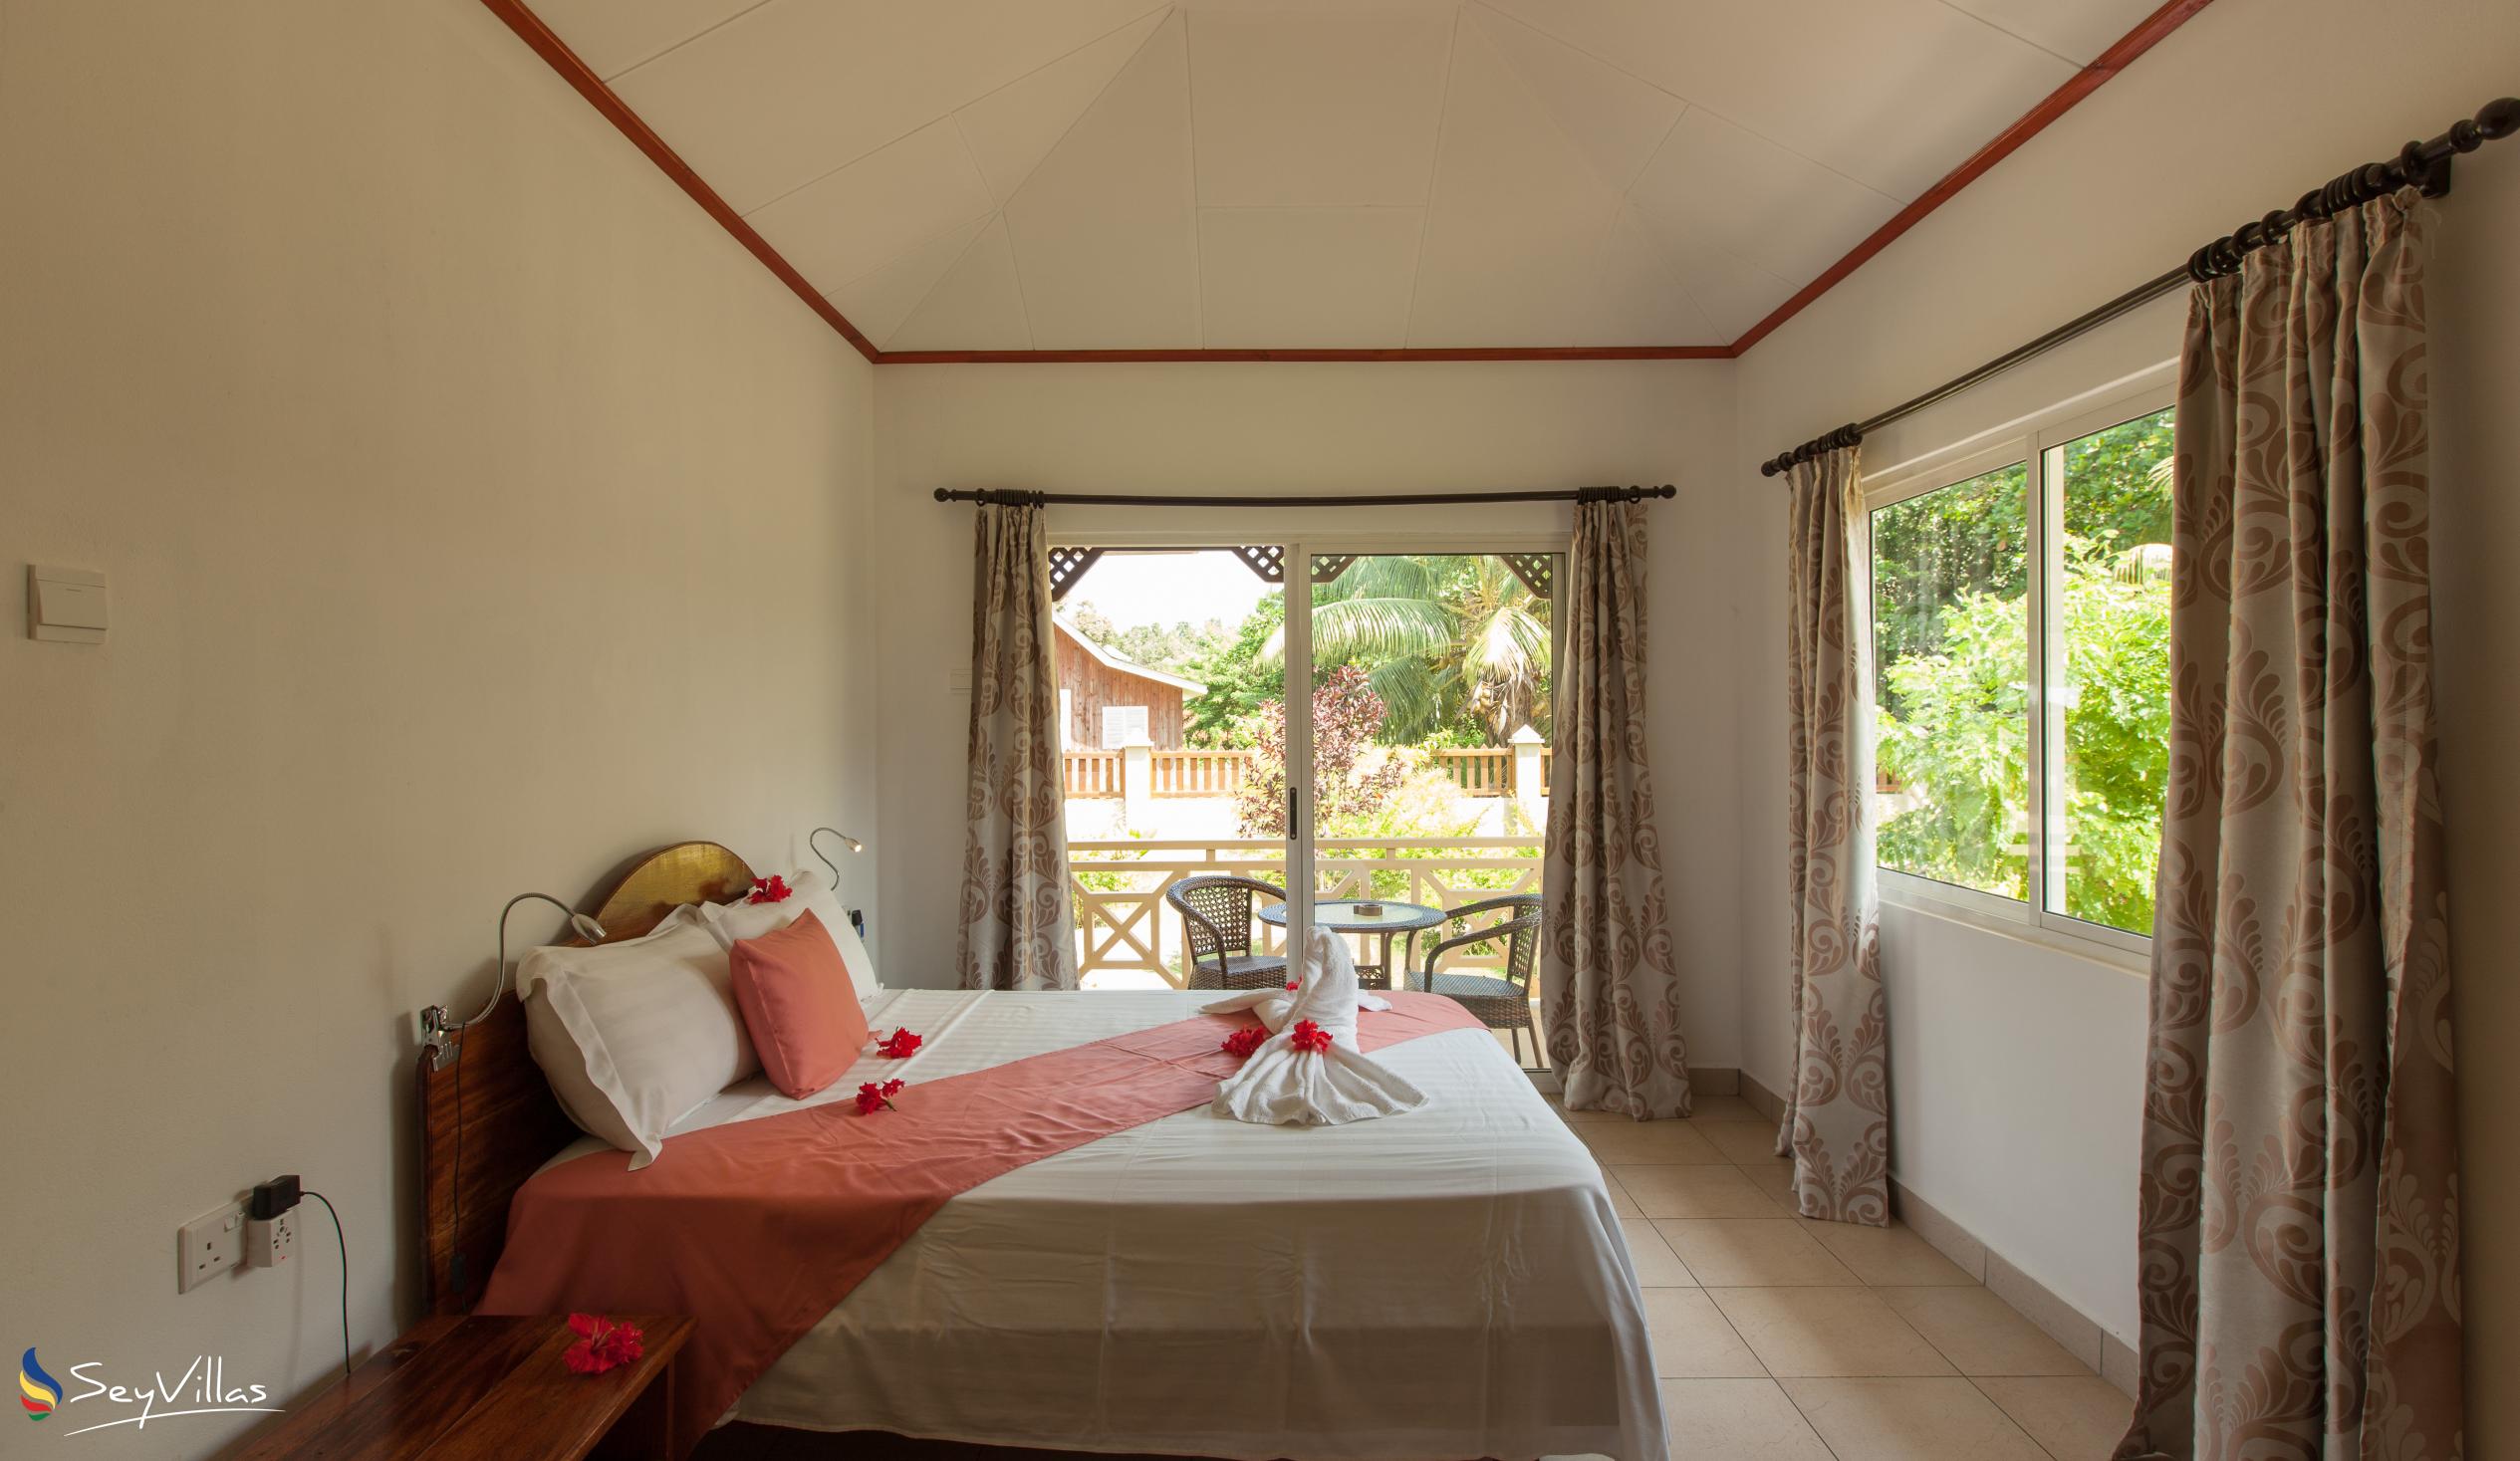 Foto 47: Hostellerie La Digue - Bungalow con 2 camere da letto - La Digue (Seychelles)